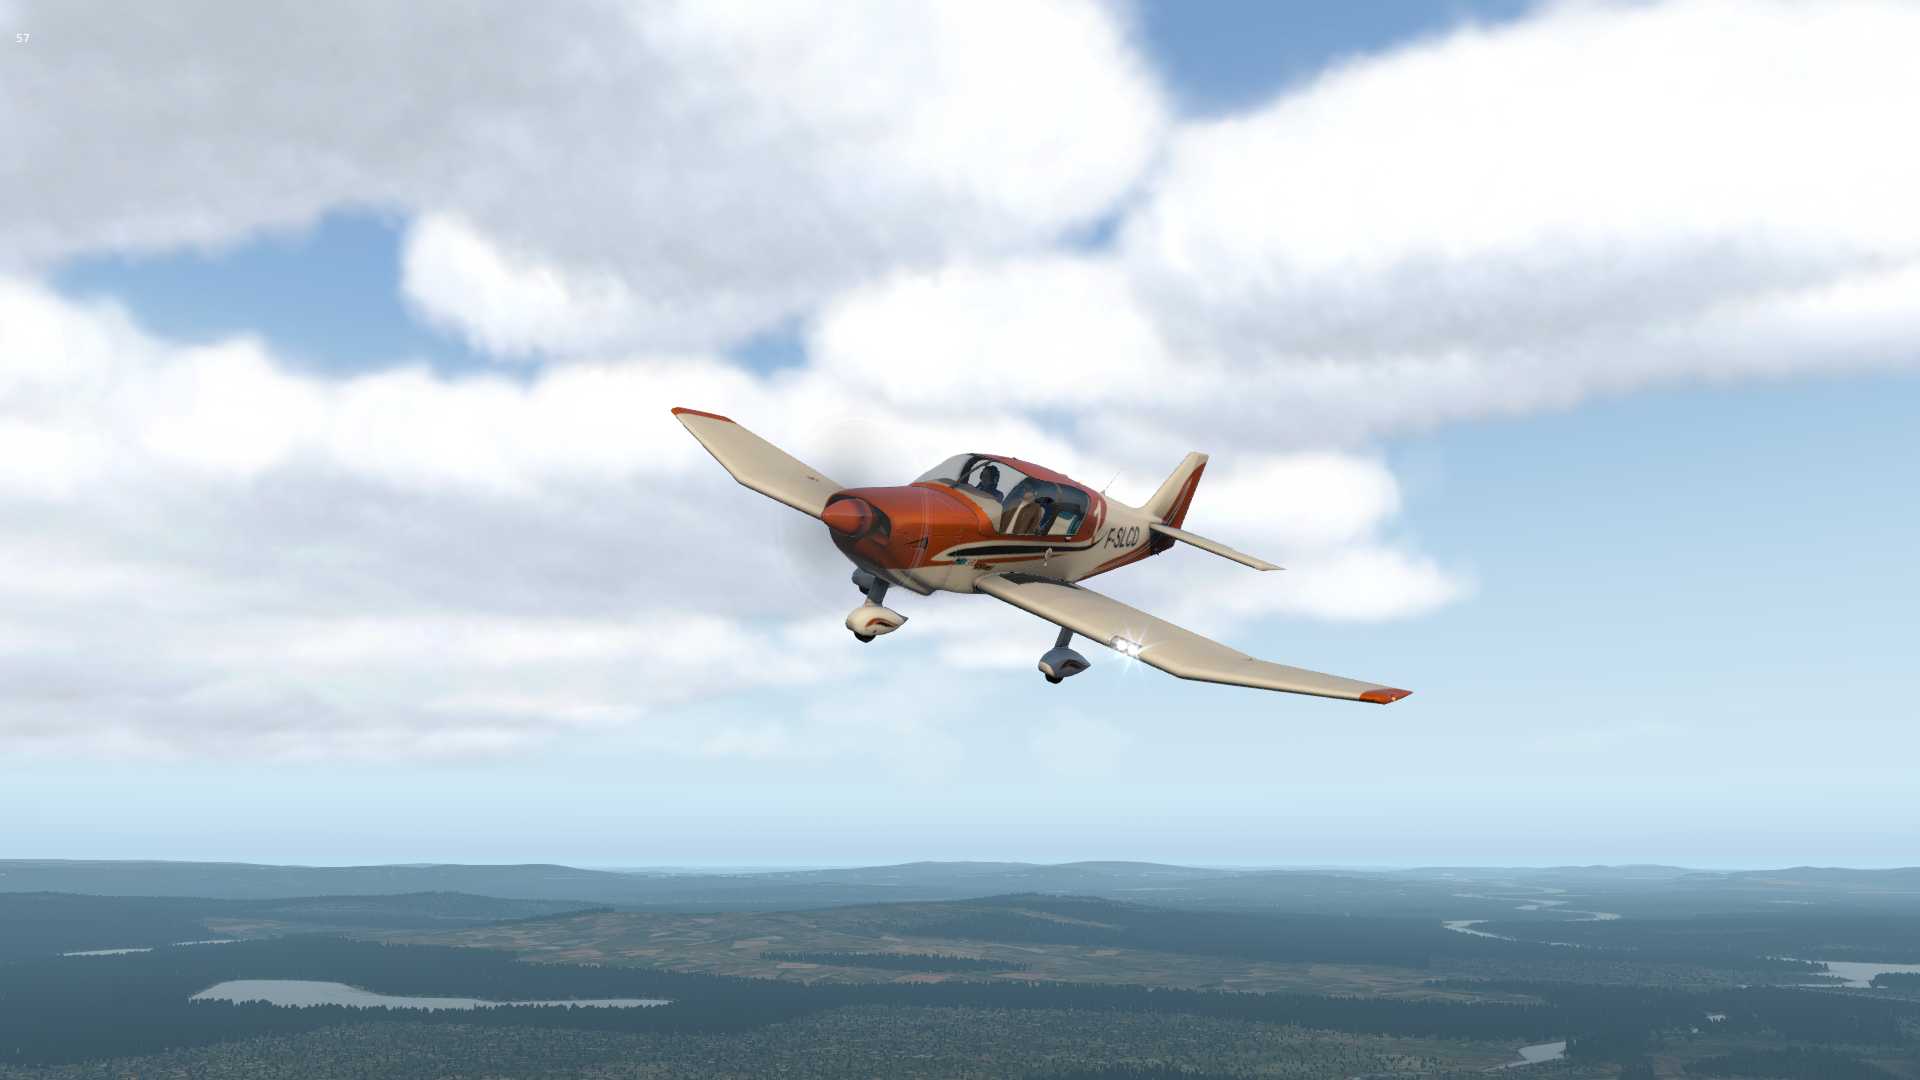 【X-Plane11】Sveg（ESND)上空的Robin-4926 